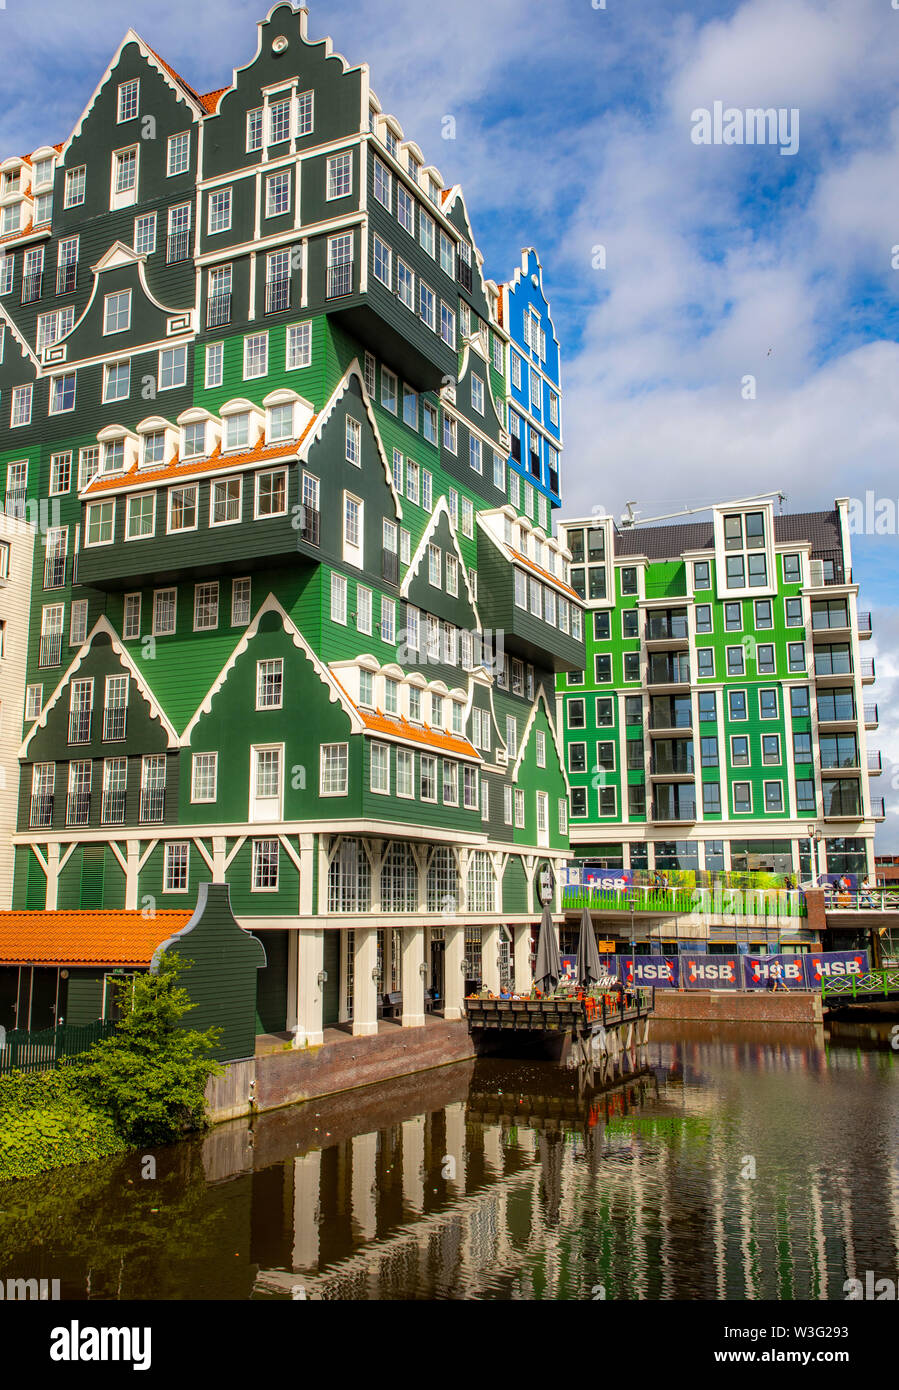 Zaandam, Niederlande, Intel Hotel, sieht aus wie 70 Häuser übereinander gestapelt, im Stil der alten Häuser der Region, Innenstadt, Stockfoto